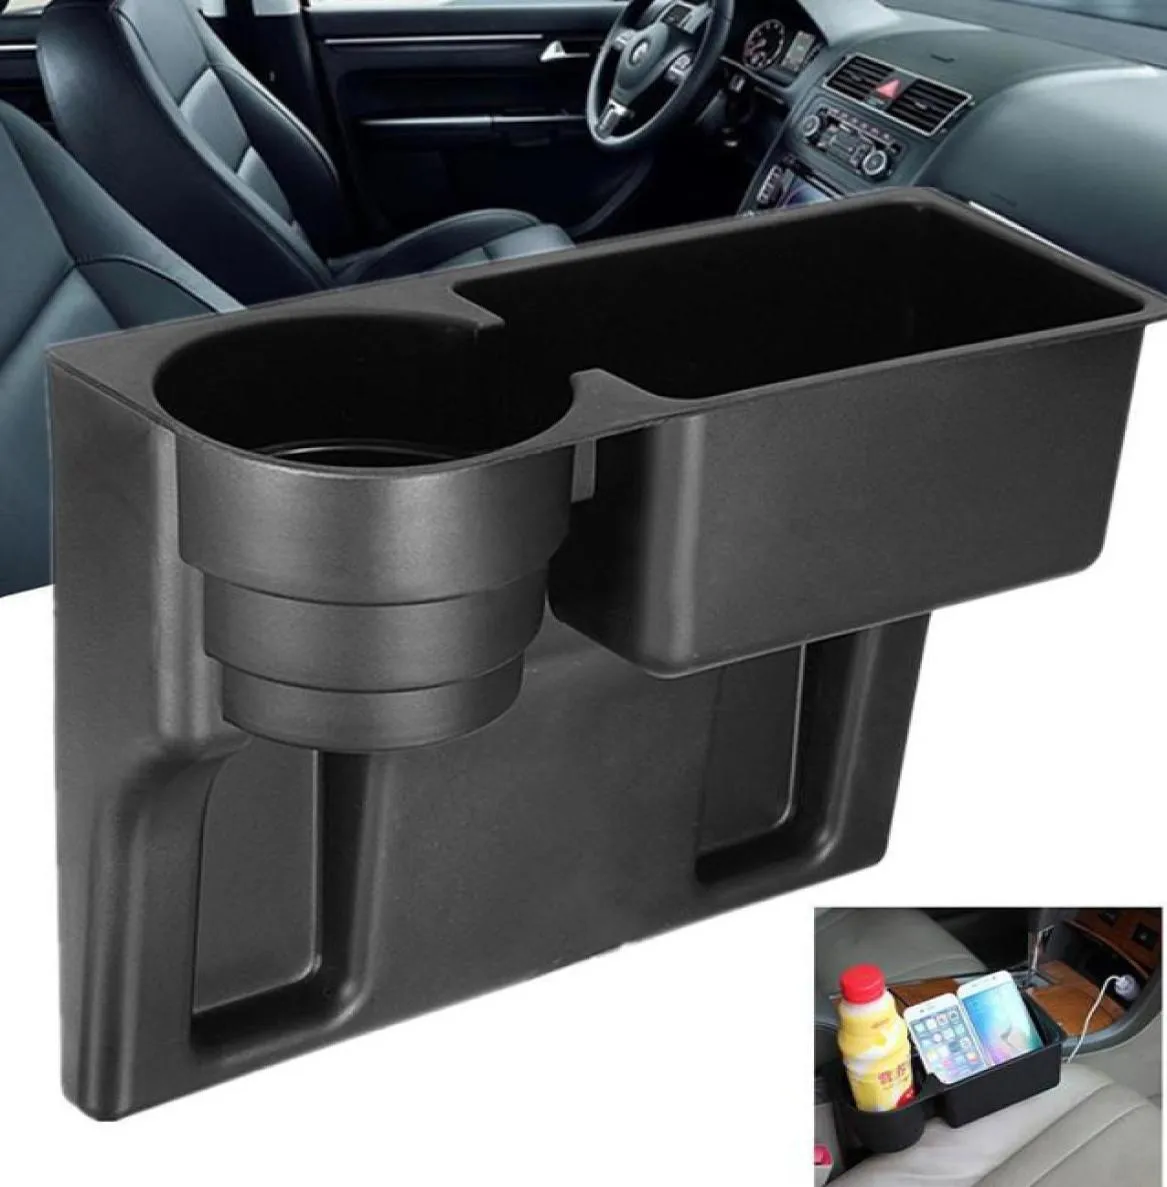 Universal Car Truck Seat Seam Wedge Cup Drink Holder Beverage Mount Stand Multifunction Car Interior Organizer Holder3679270